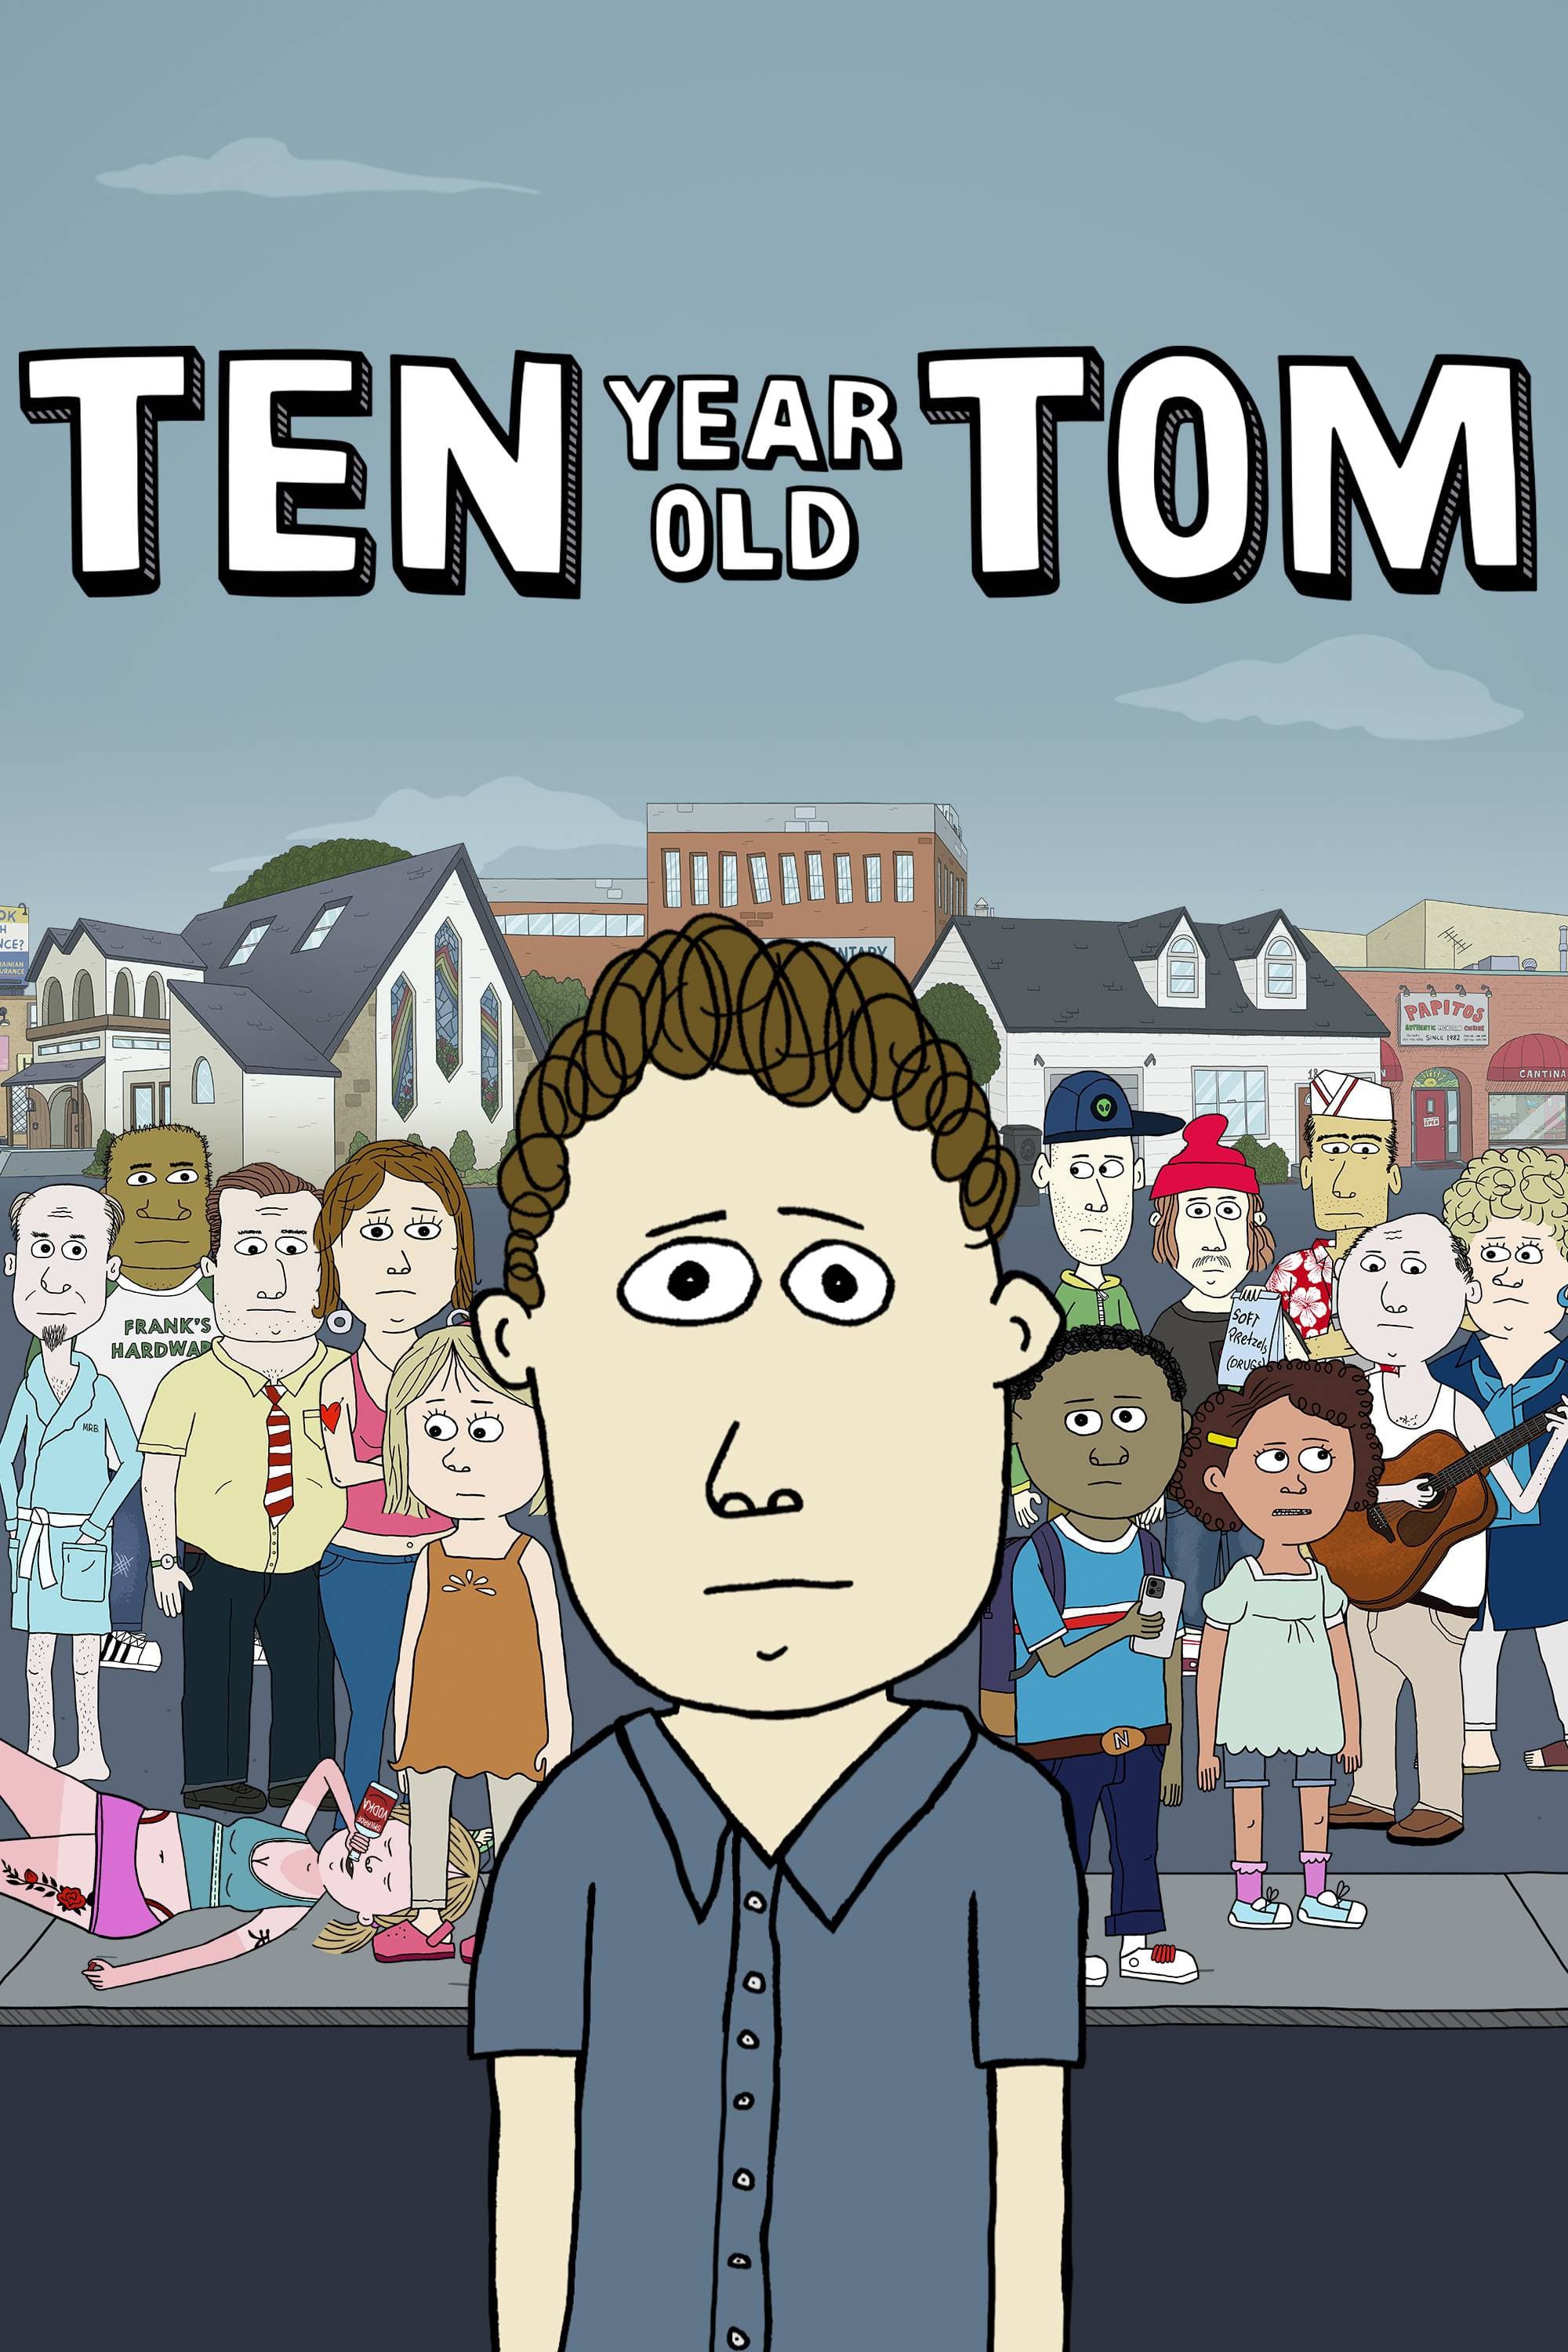 Ten Year Old Tom (2021)